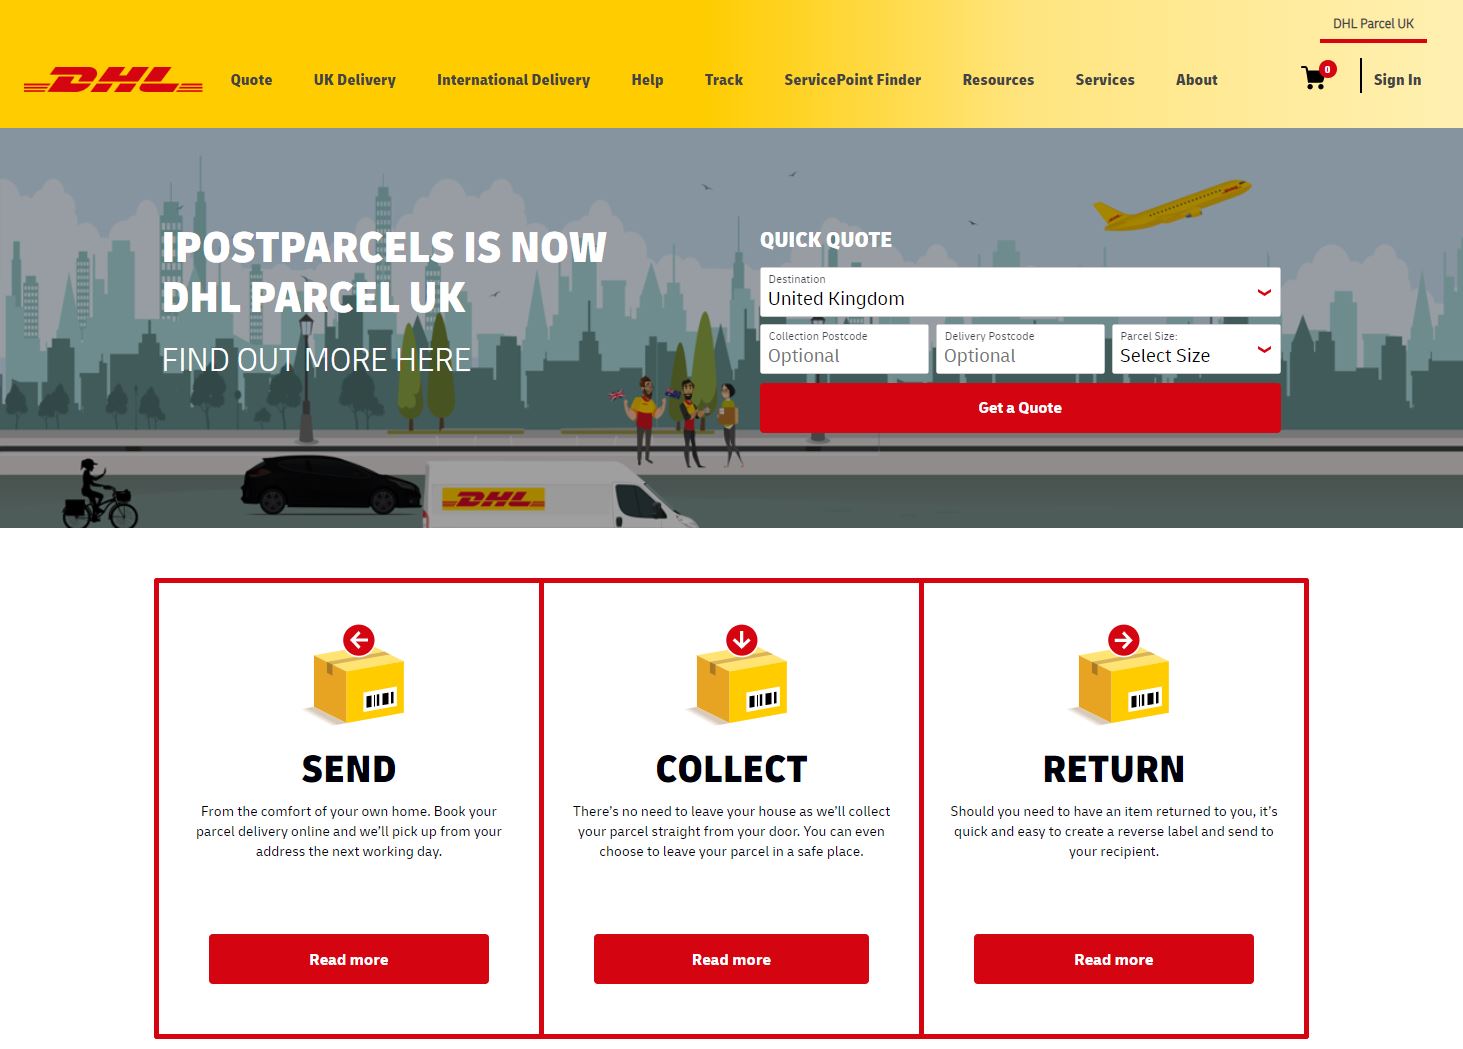 DHL Parcel UK Homepage